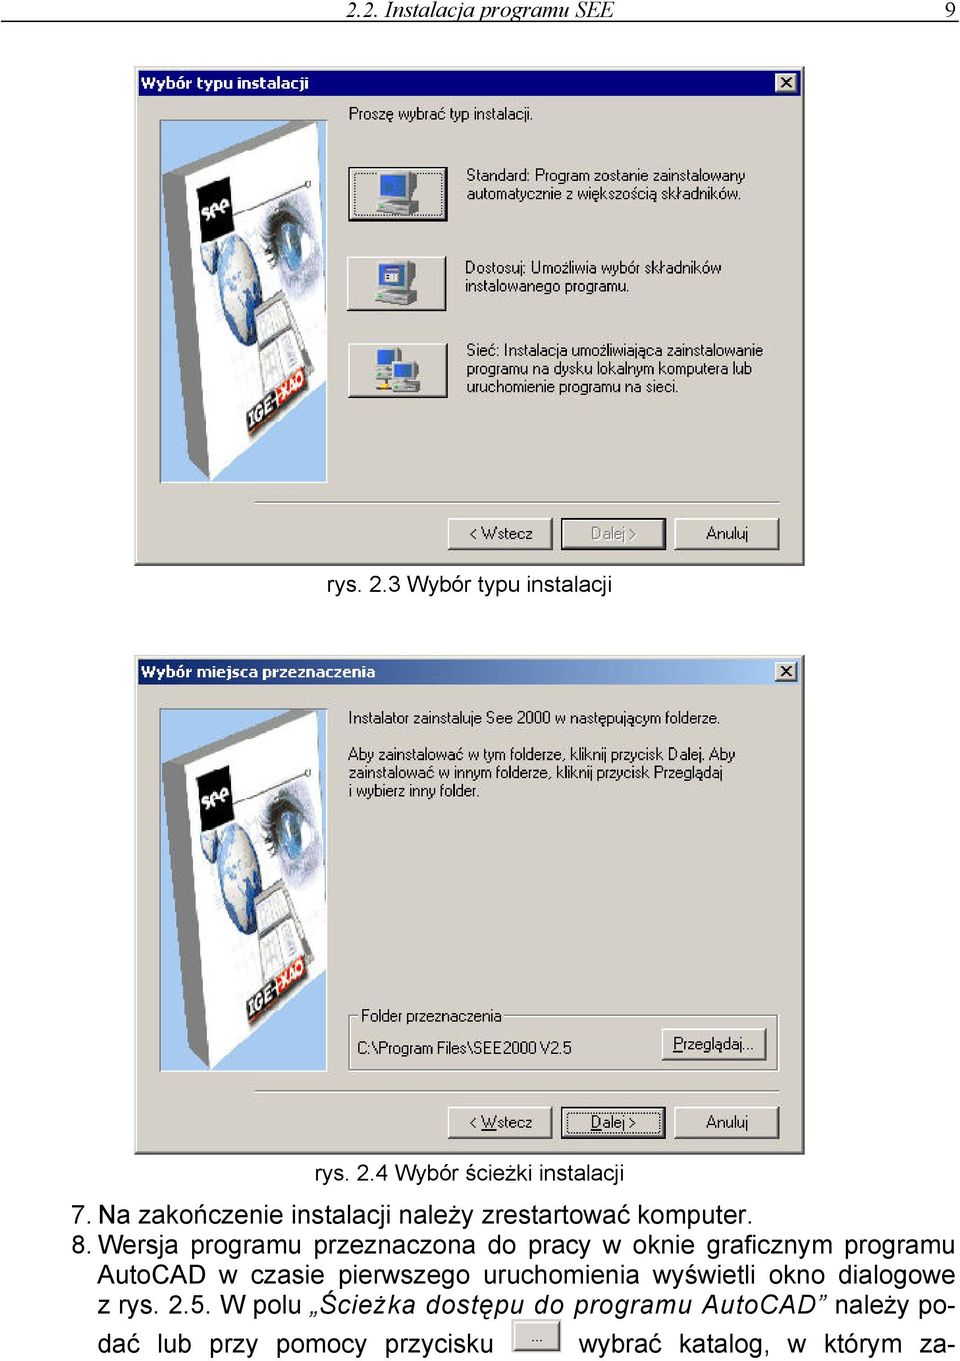 Wersja programu przeznaczona do pracy w oknie graficznym programu AutoCAD w czasie pierwszego